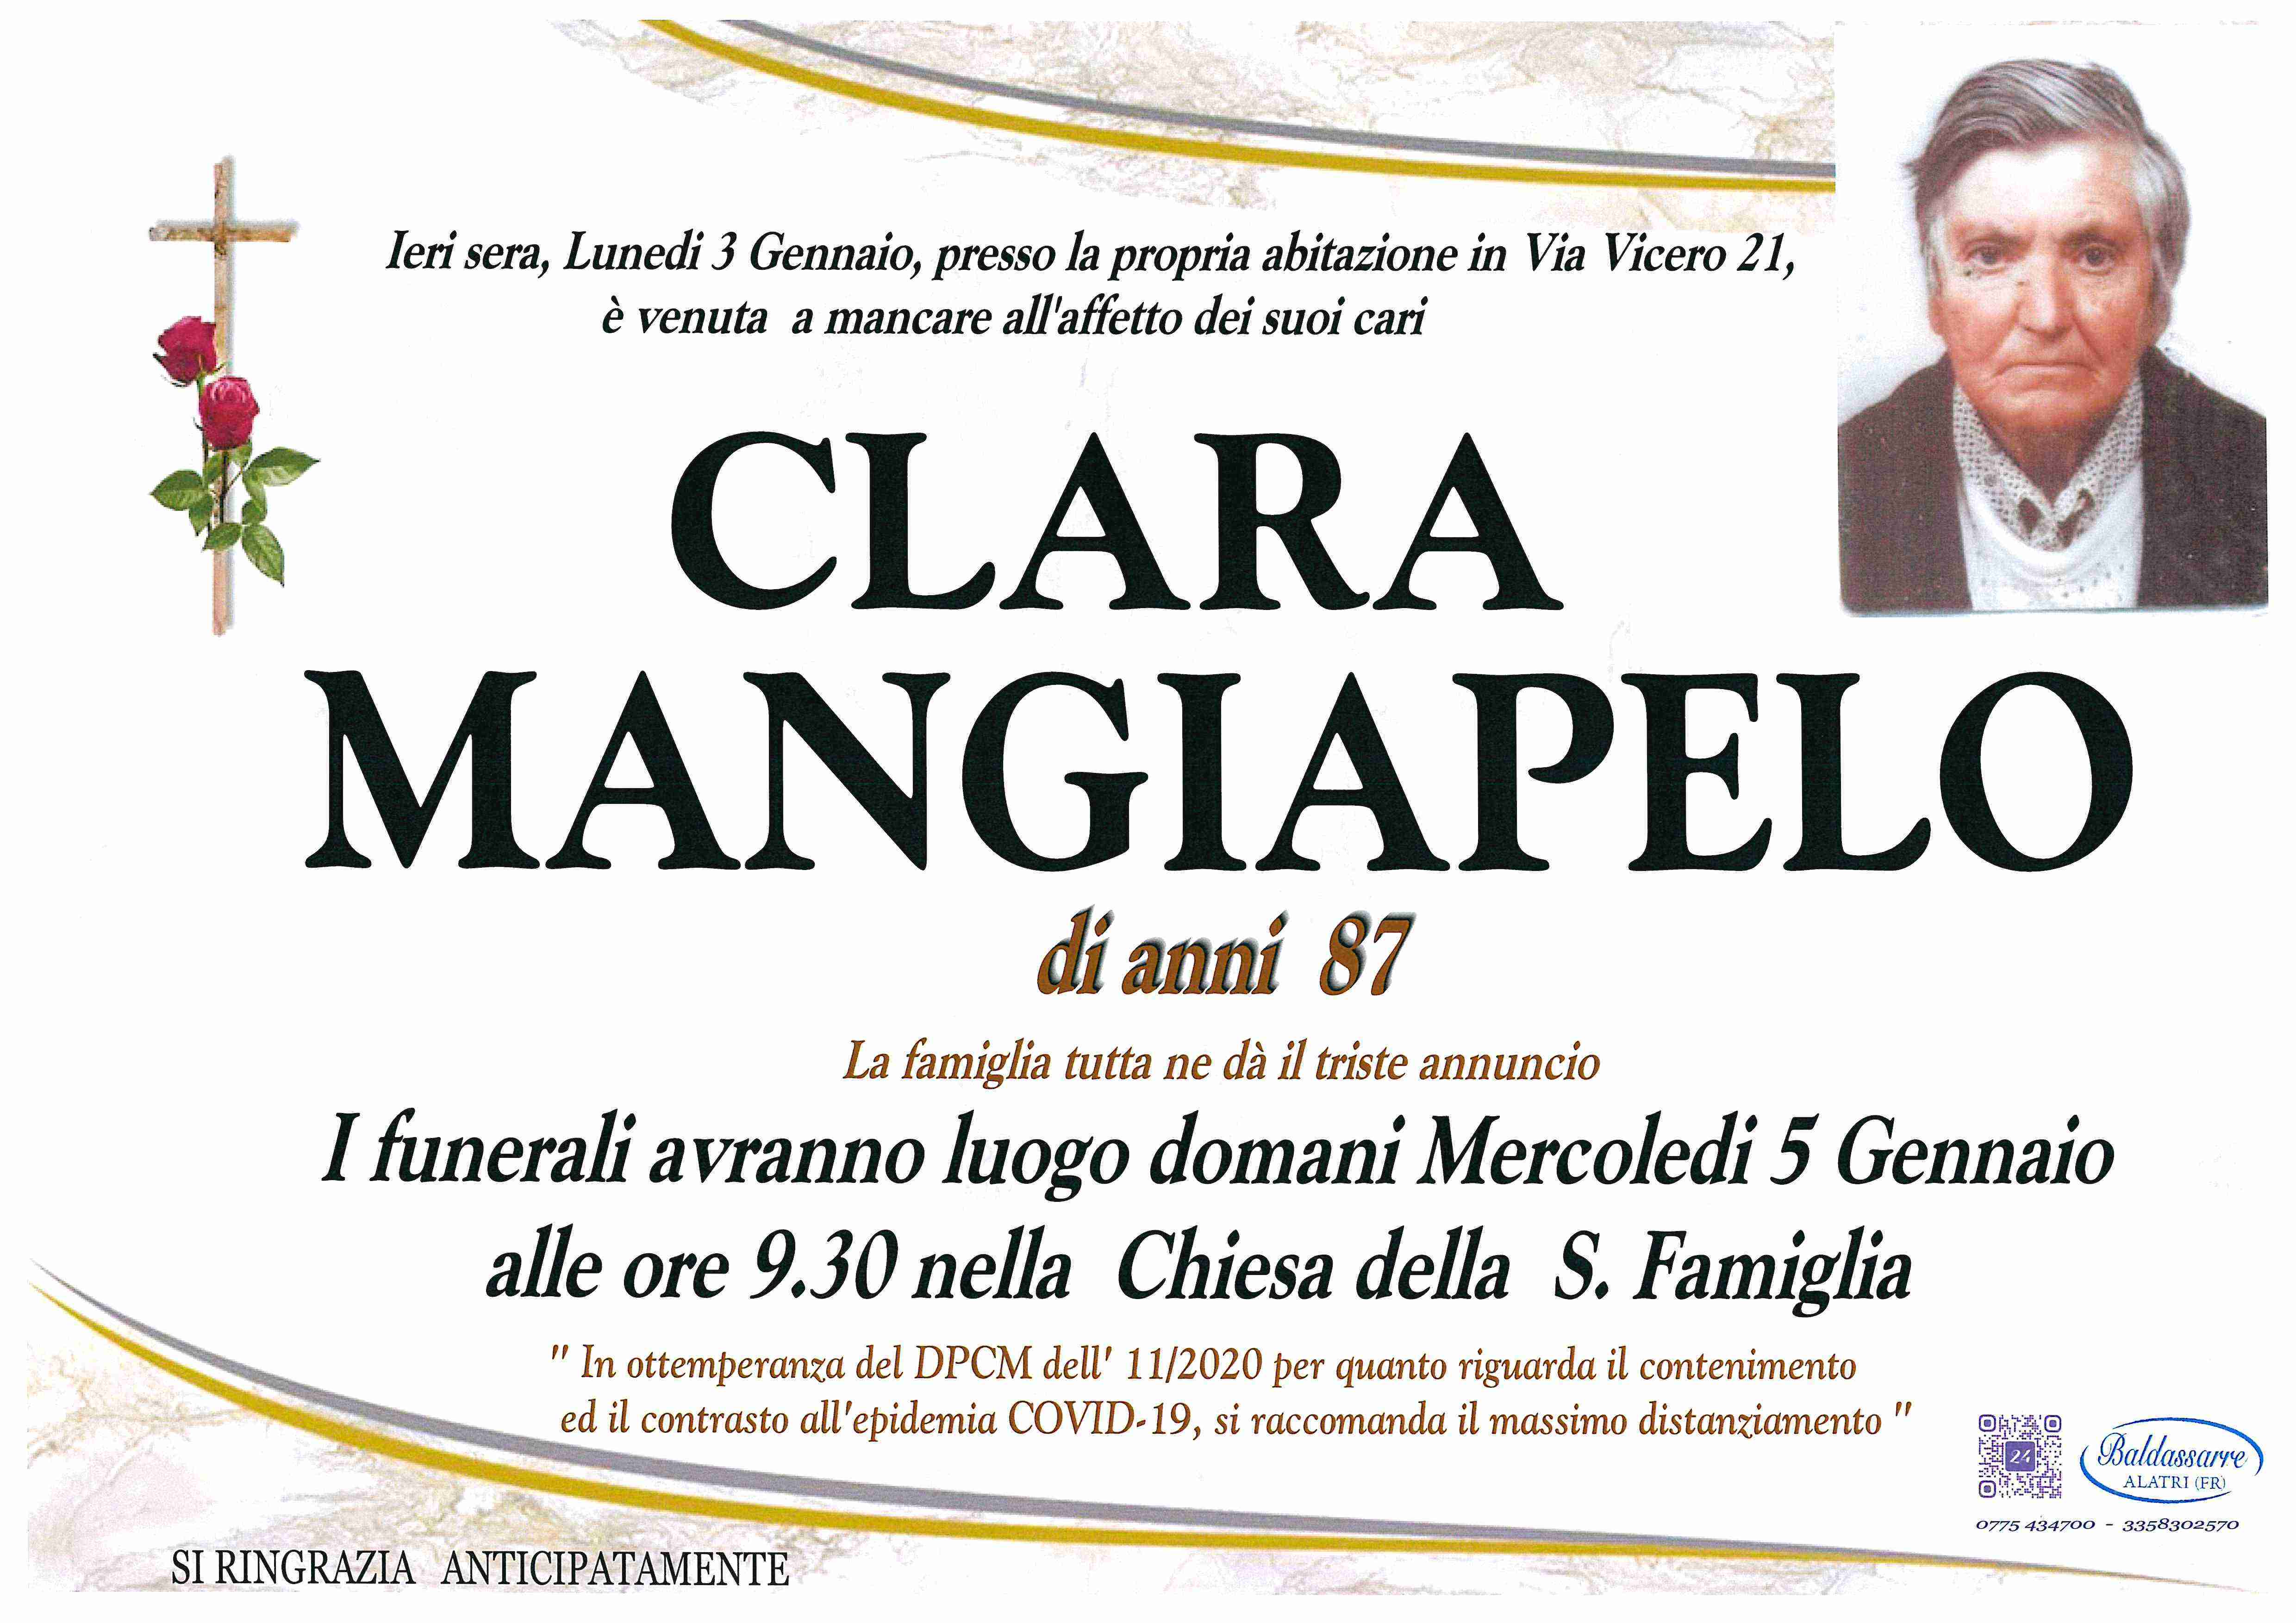 Clara Mangiapelo